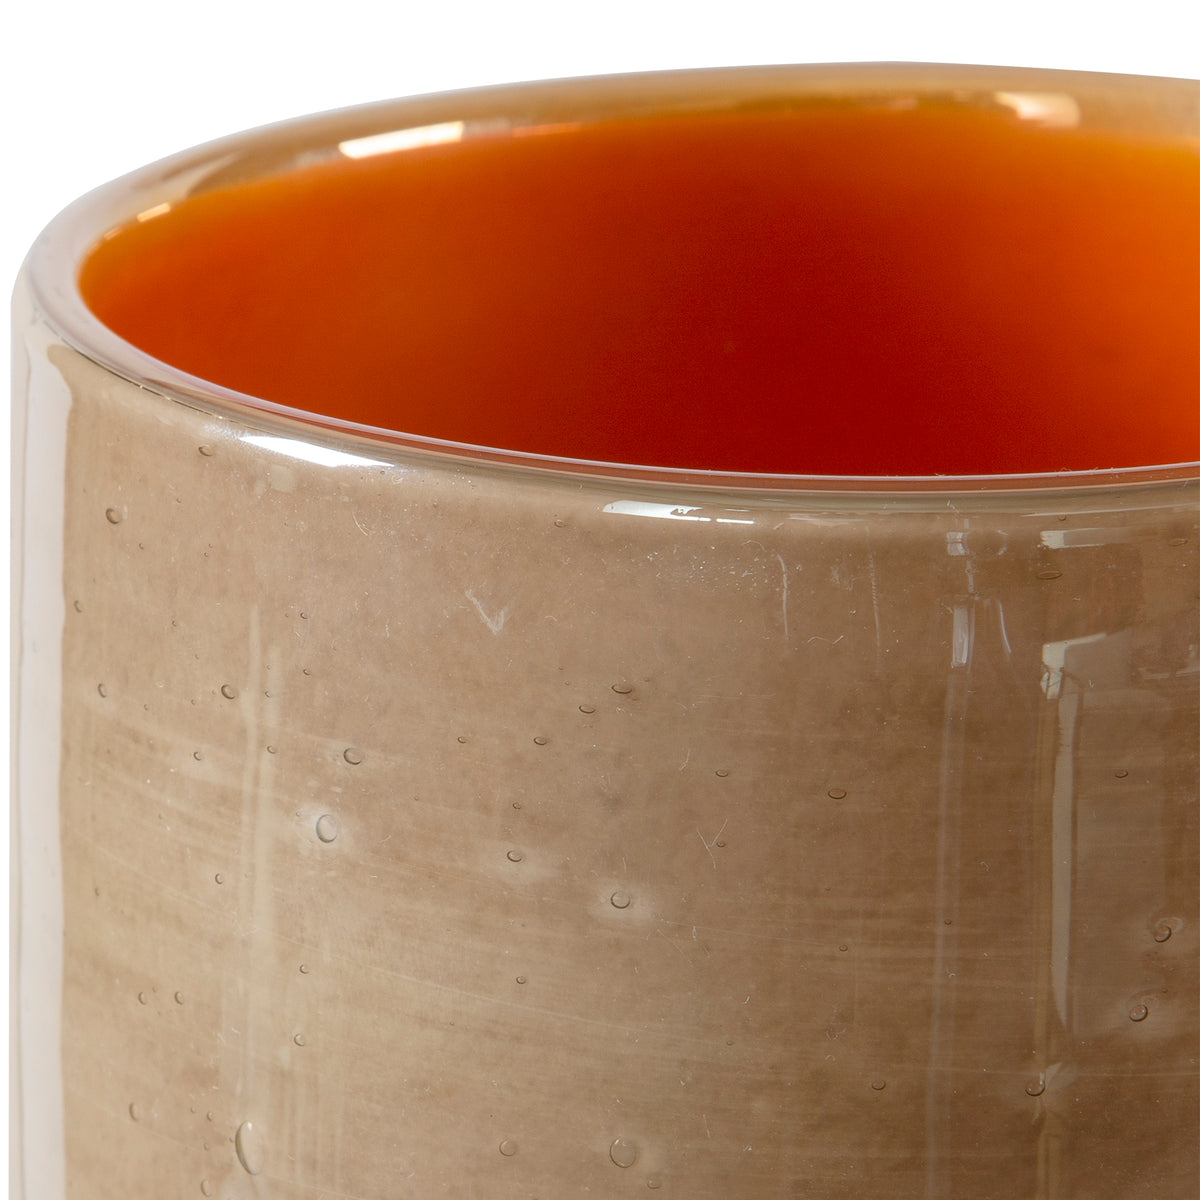 Tangelo Beige Orange Vases, S/2